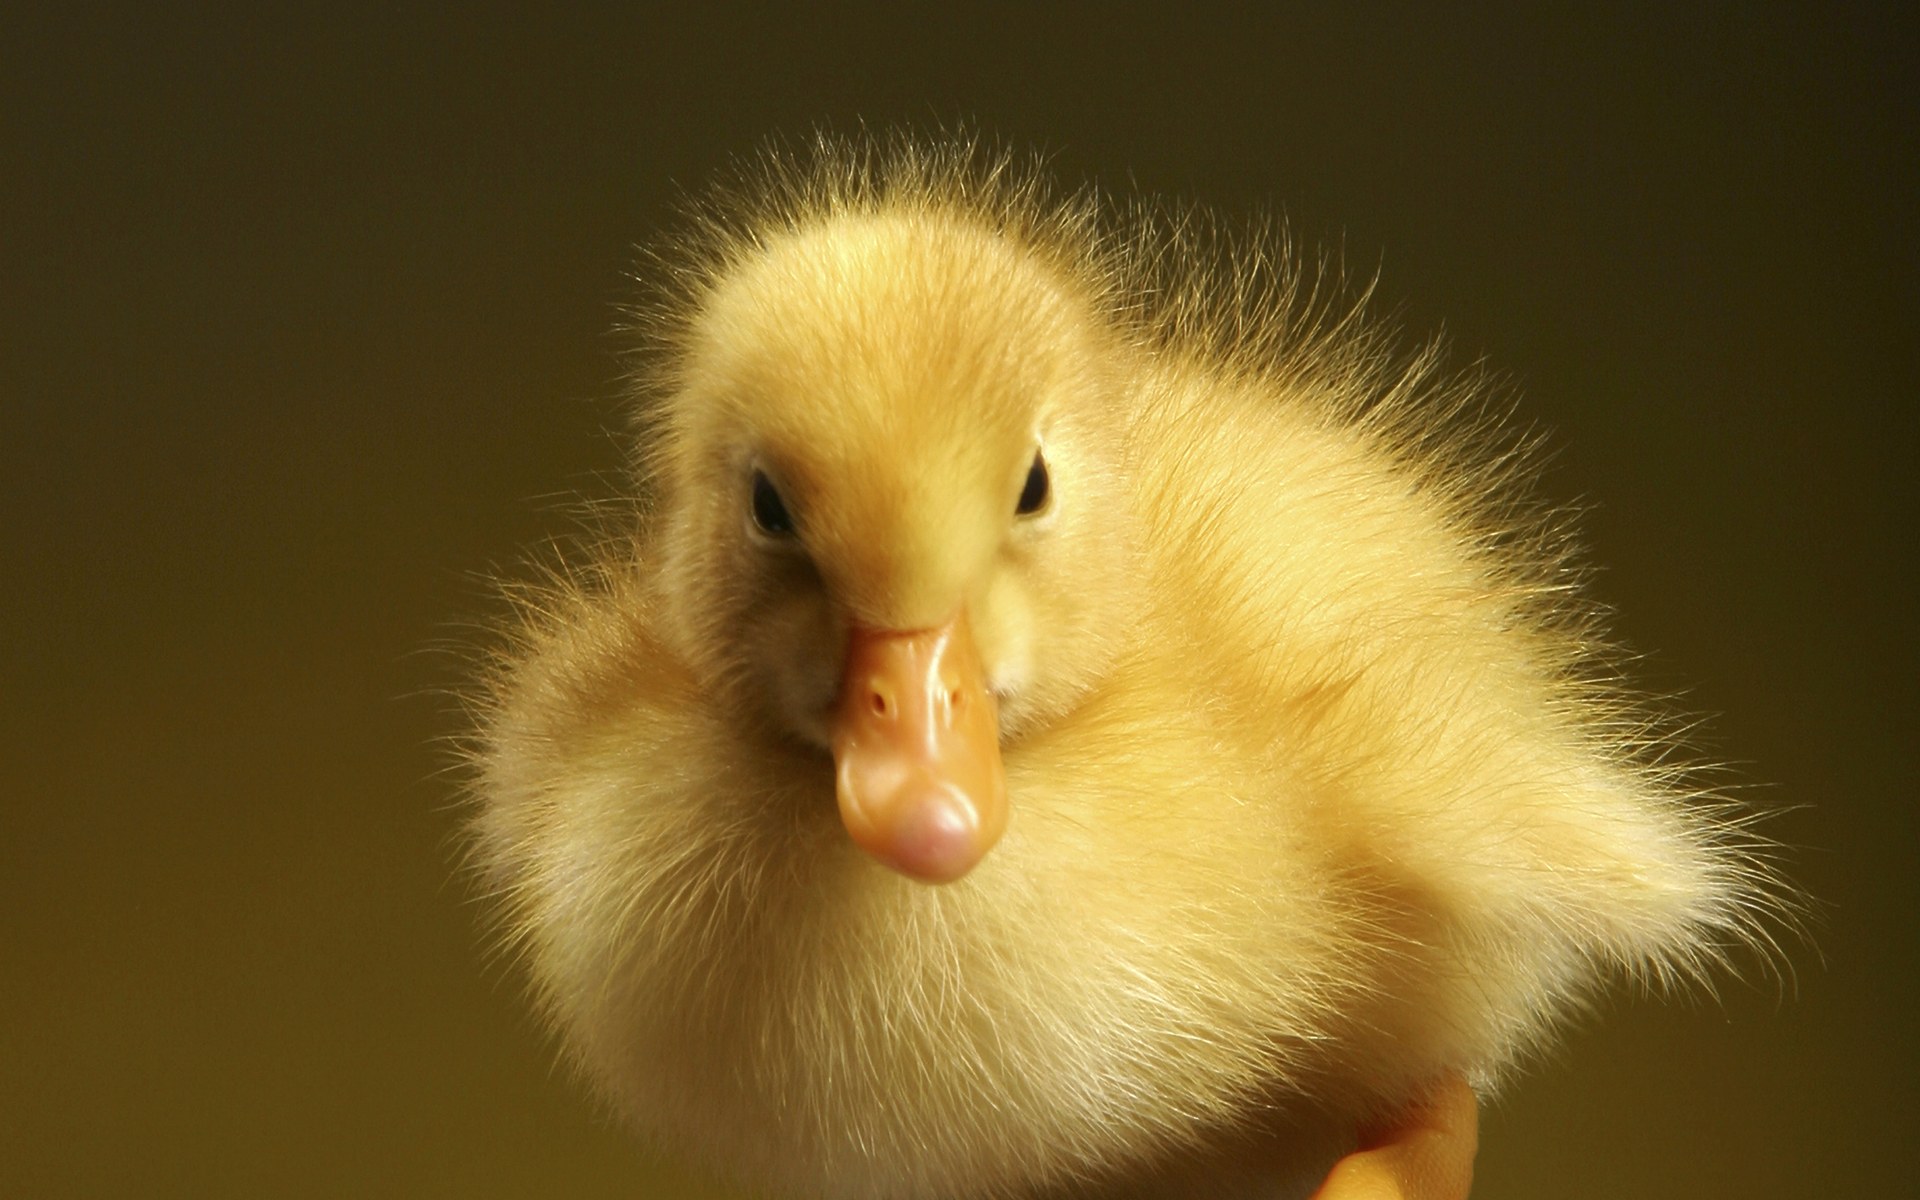 Duckling · Duckling · Duckling · Duckling ...